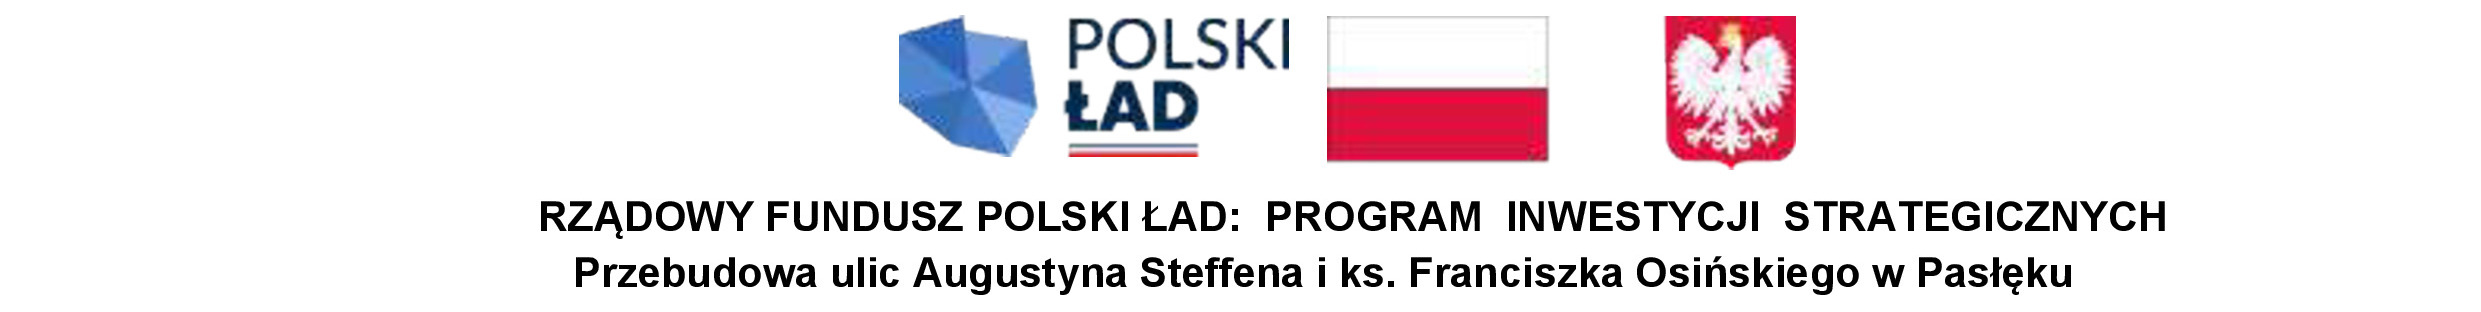 Polski-Lad-Belka-ok